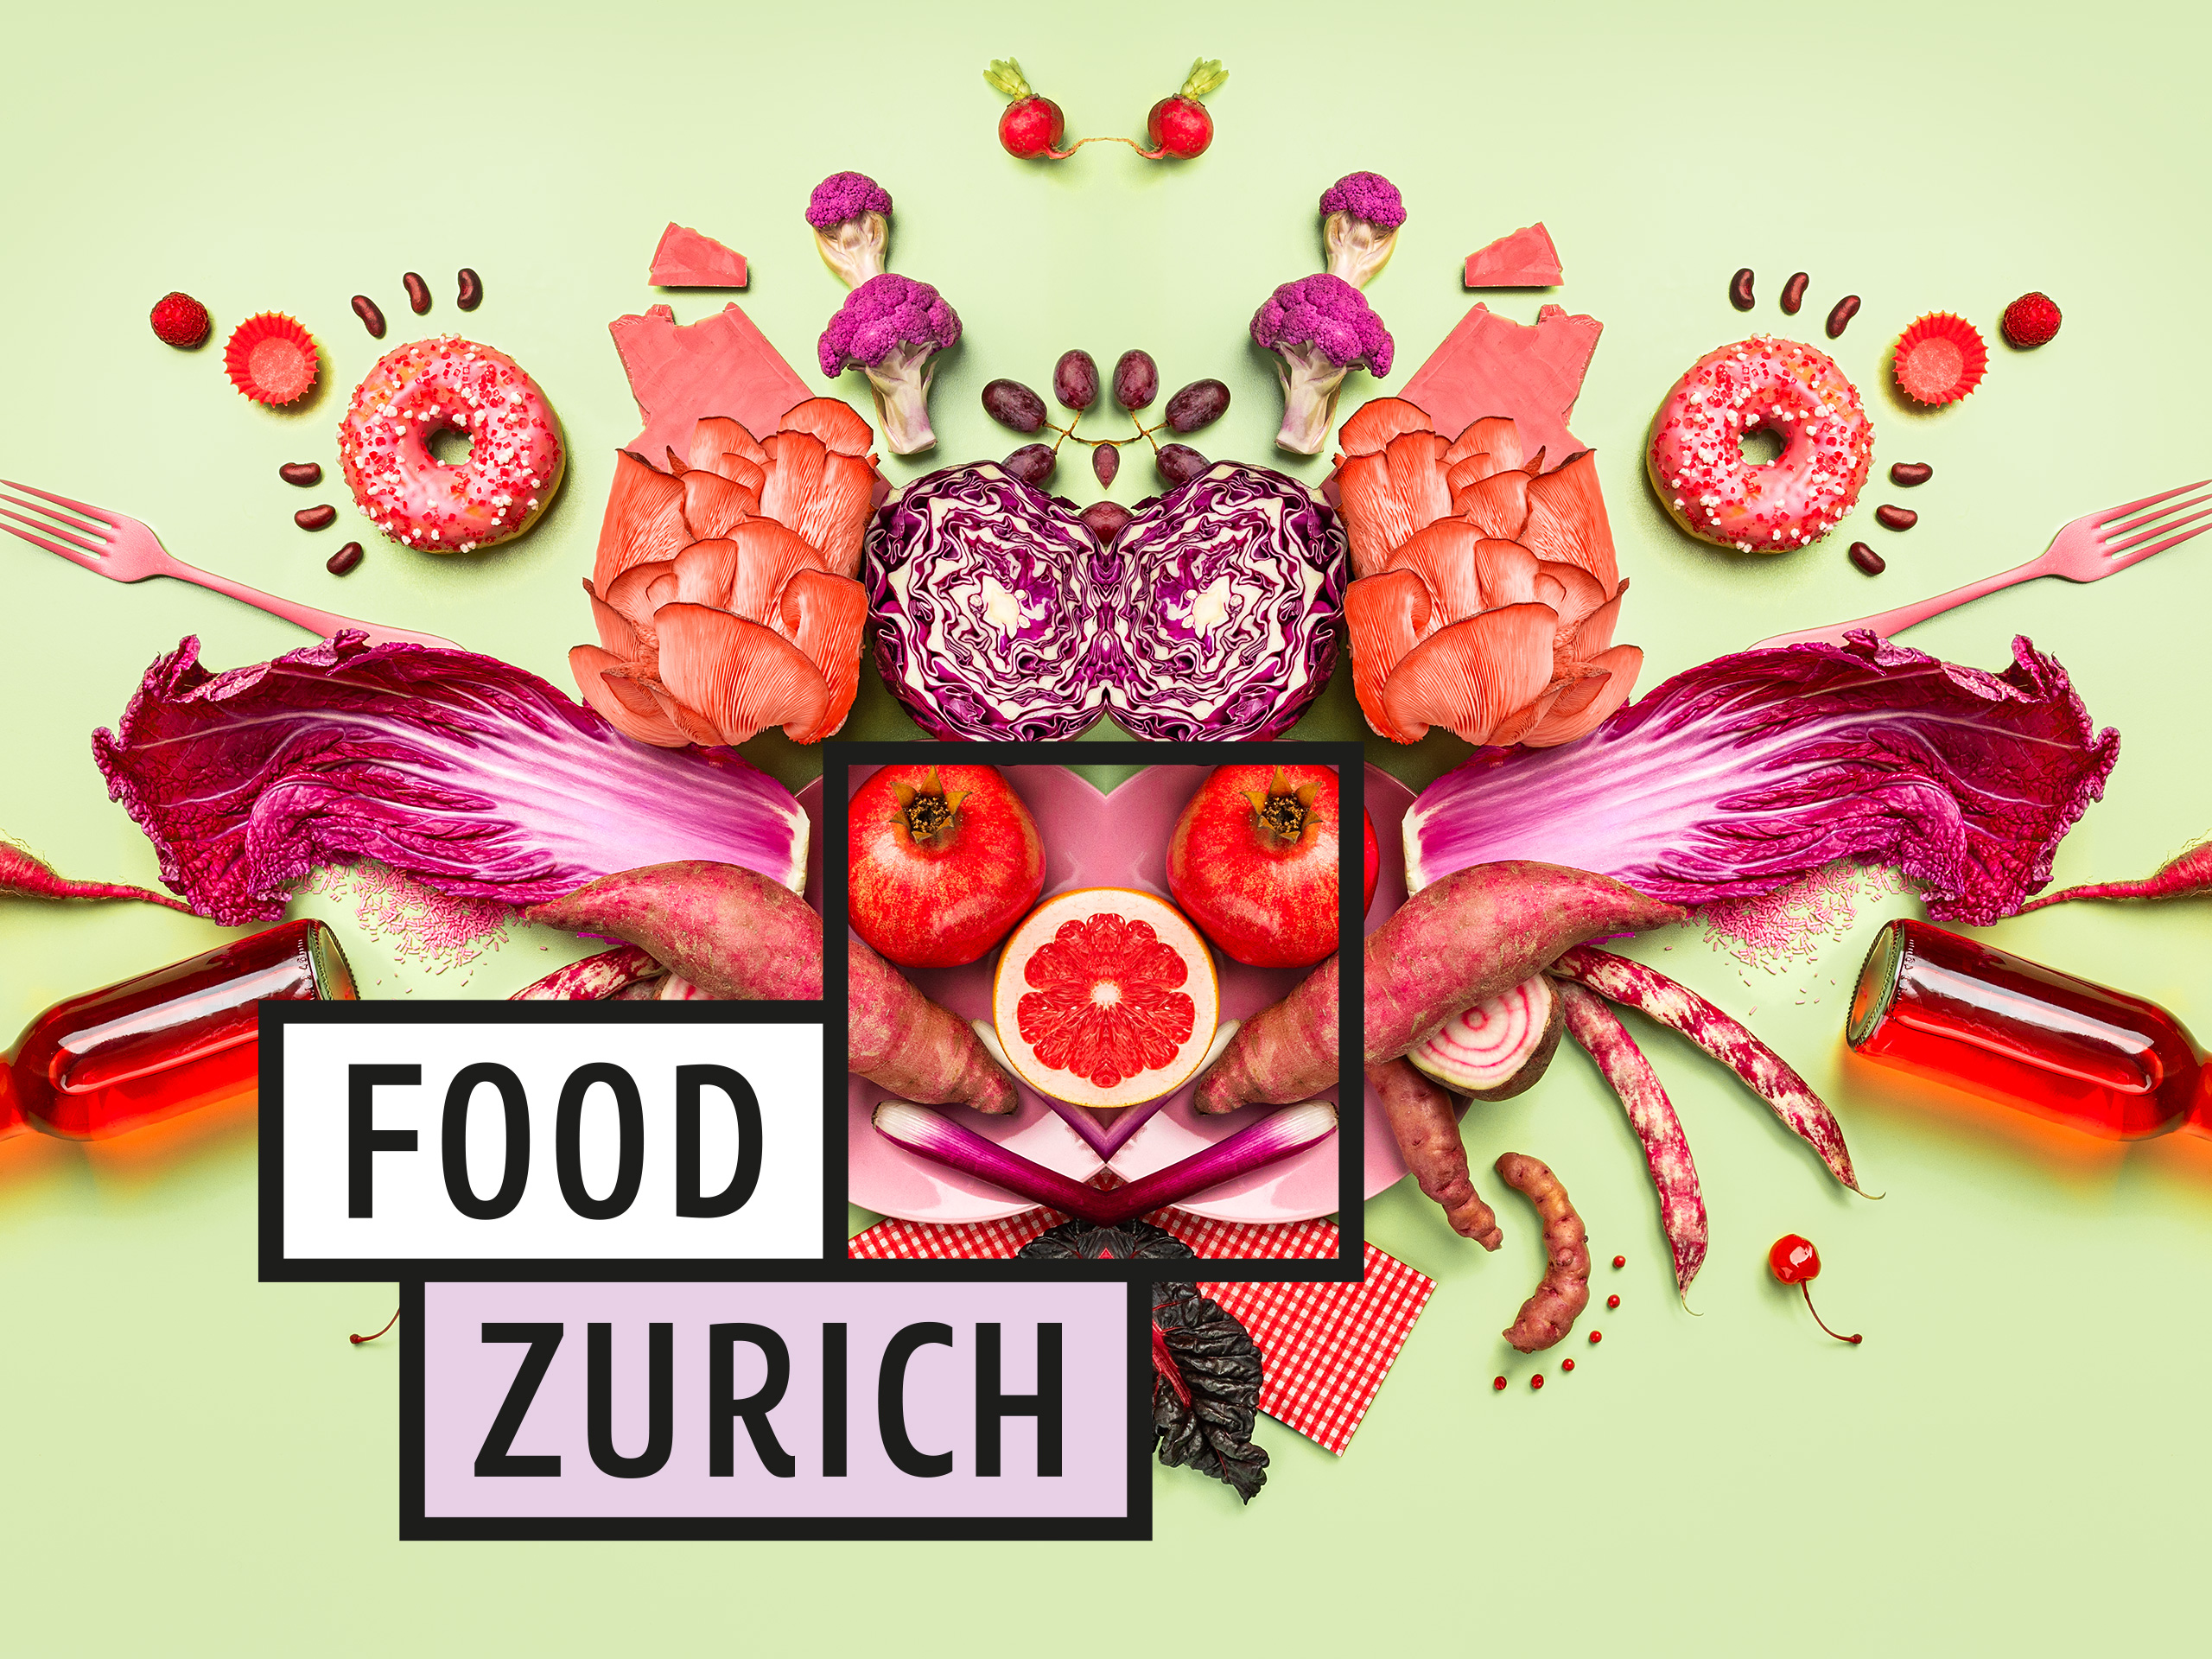 Food Zurich